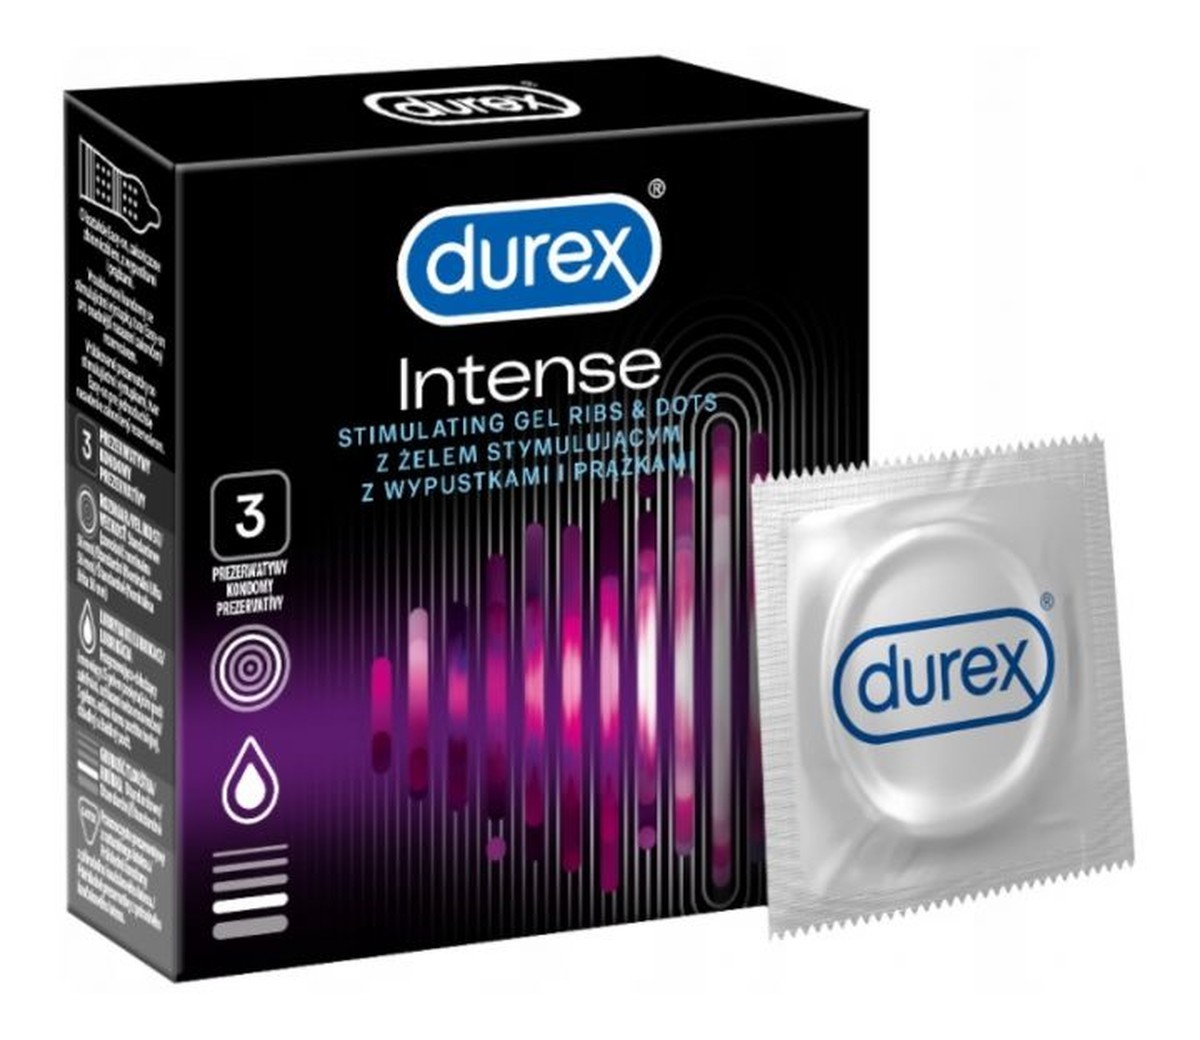 Durex prezerwatywy 3 szt